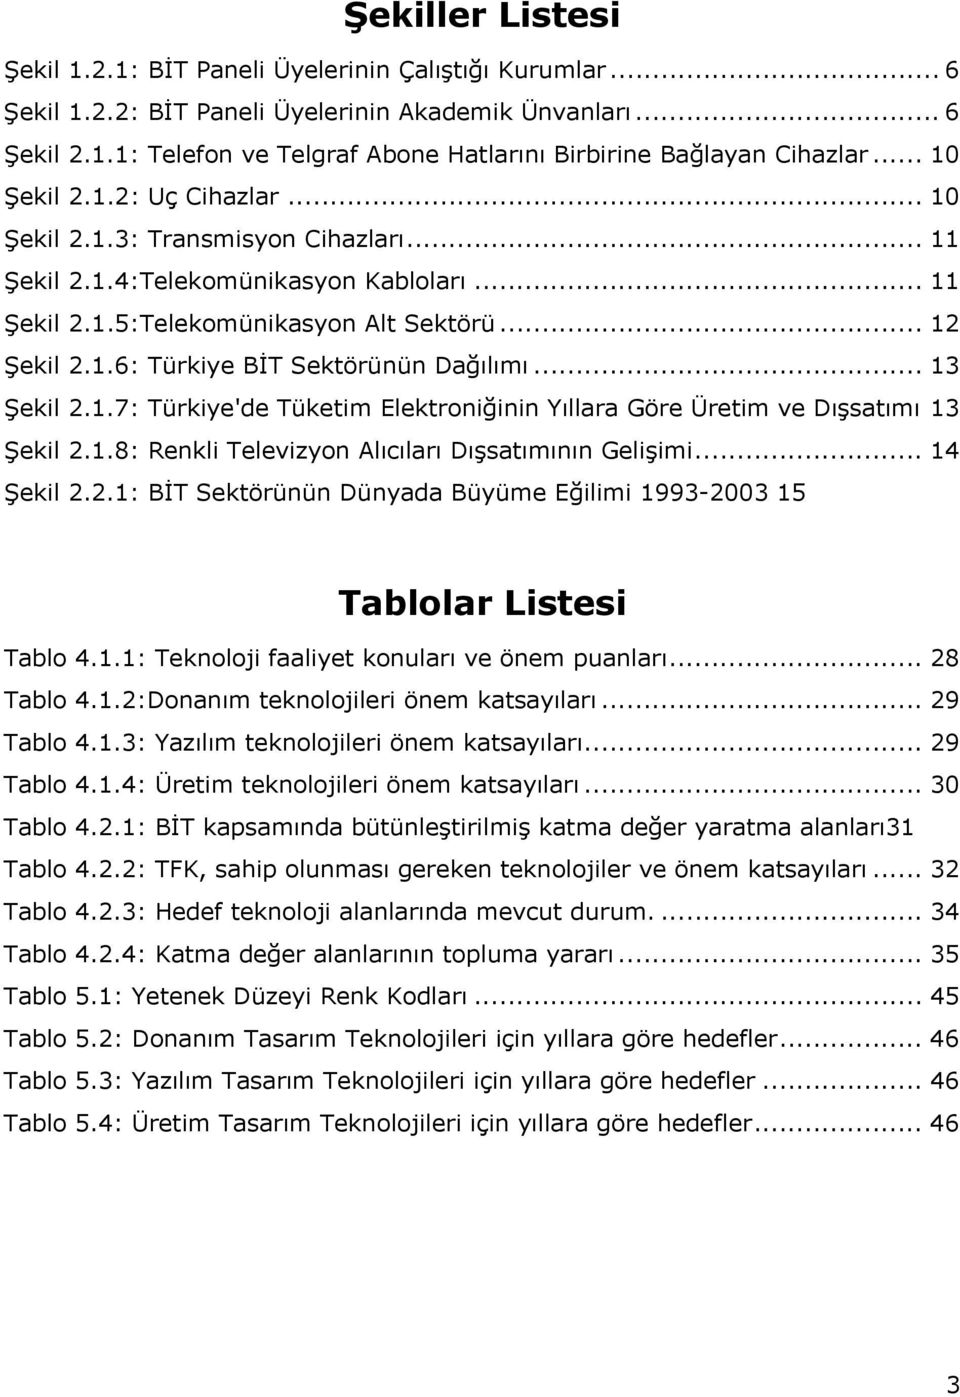 .. 13 Şekil 2.1.7: Türkiye'de Tüketim Elektroniğinin Yıllara Göre Üretim ve Dışsatımı 13 Şekil 2.1.8: Renkli Televizyon Alıcıları Dışsatımının Gelişimi... 14 Şekil 2.2.1: BİT Sektörünün Dünyada Büyüme Eğilimi 1993-2003 15 Tablolar Listesi Tablo 4.